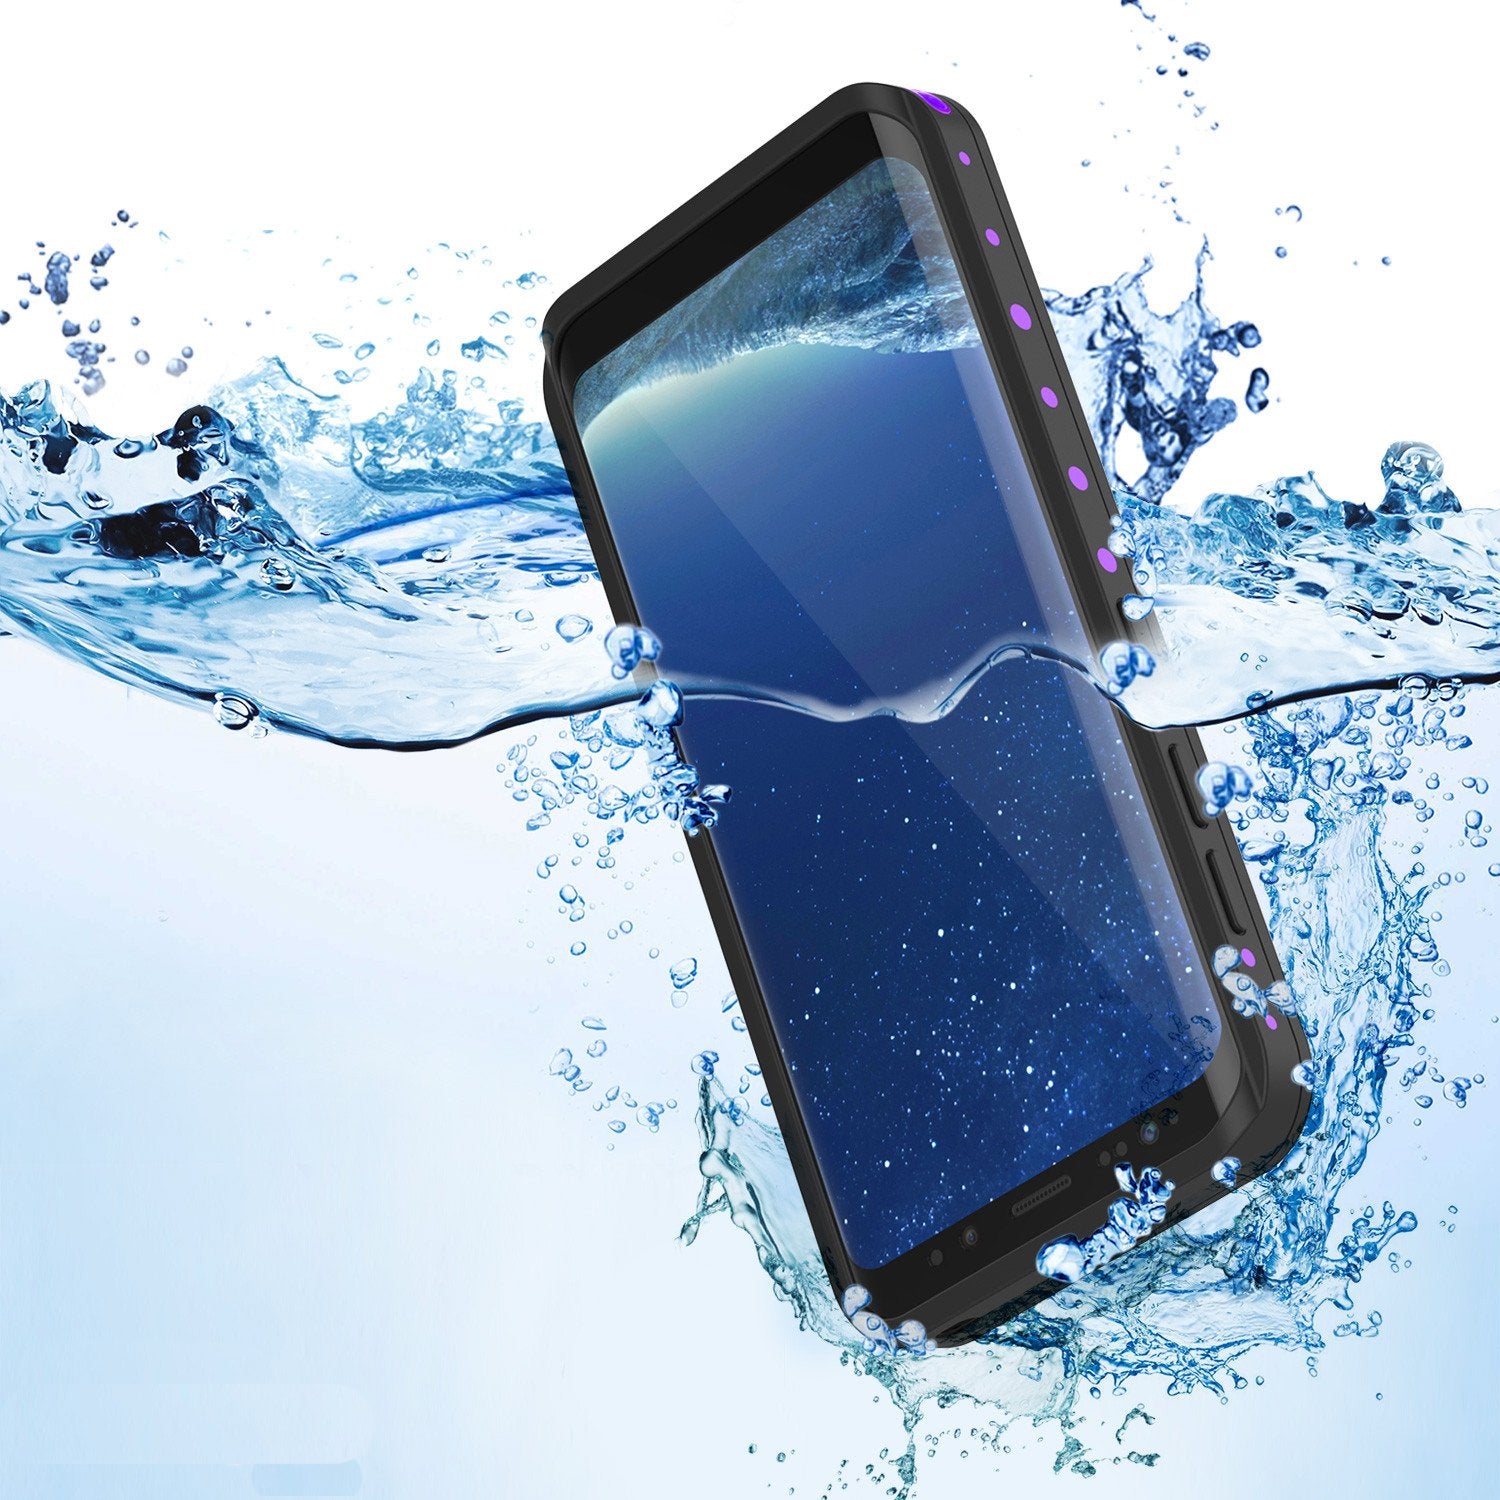 Galaxy S8 Plus Waterproof Case PunkCase StudStar Purple